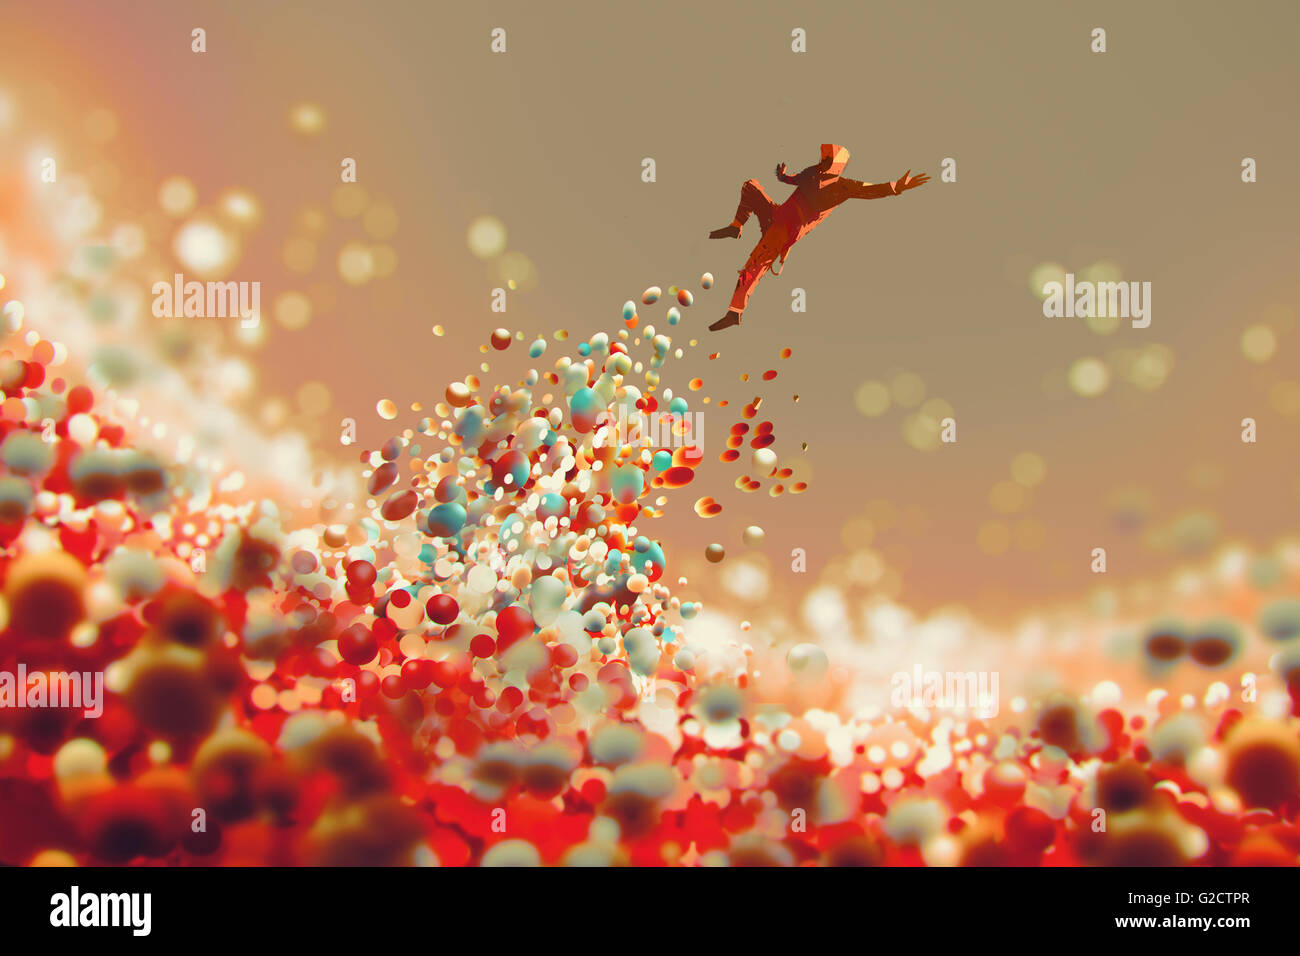 L'uomo il salto dal sacco di sfere colorate, Illustrazione tecnica Foto Stock